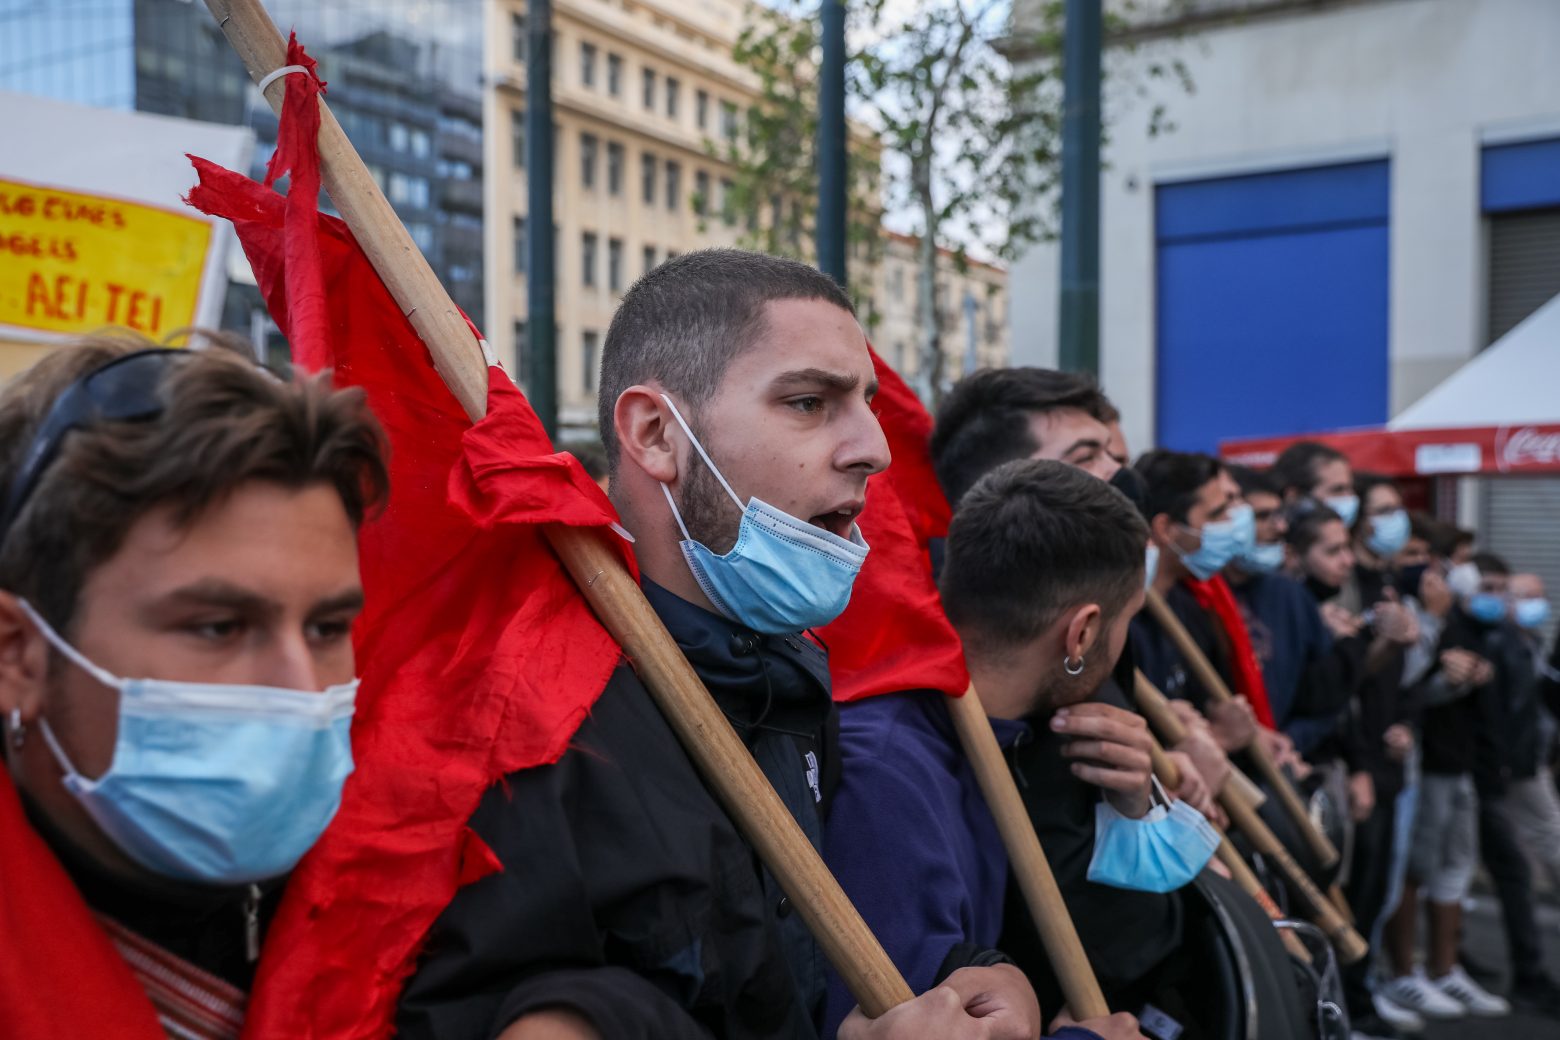 Με συλλαλητήριο αντιδρούν στις αξιολογήσεις οι εκπαιδευτικοί - Πορεία στο κέντρο της Αθήνας